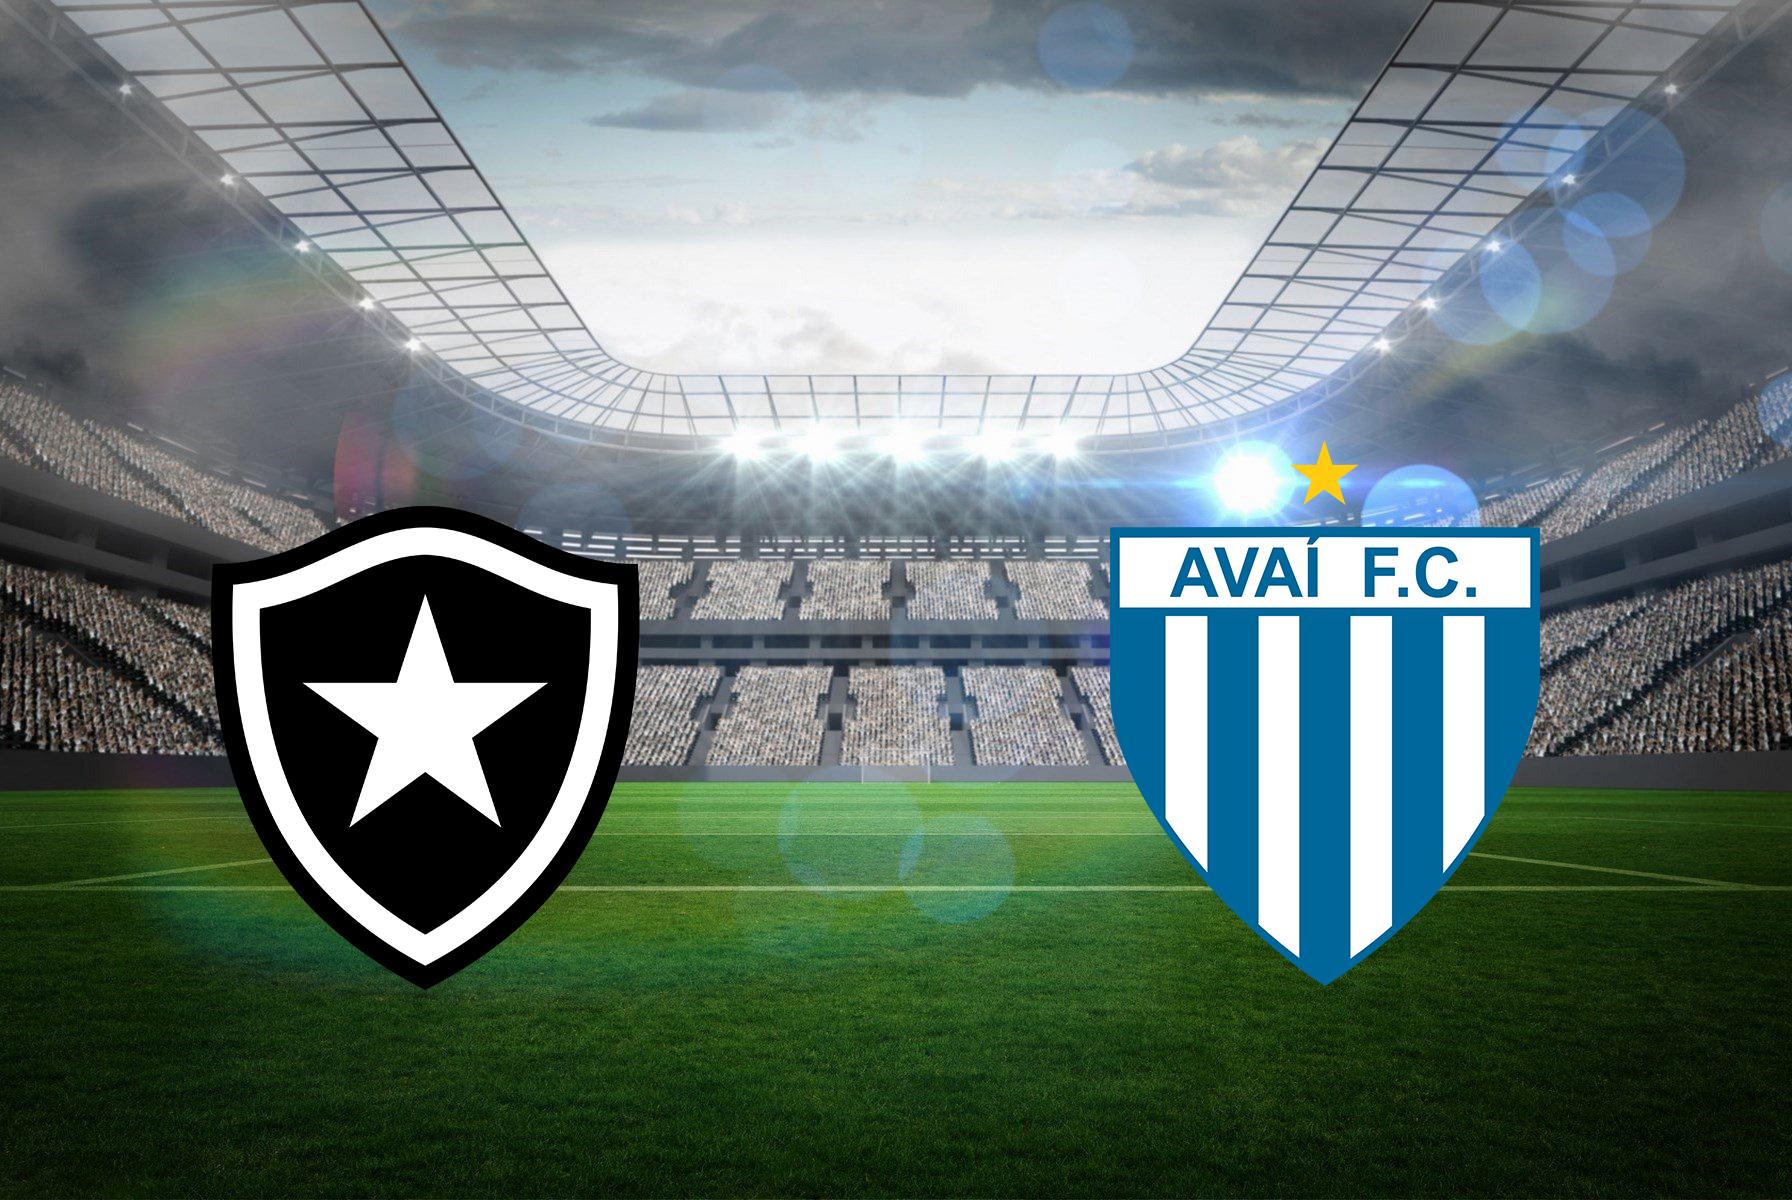 soi-keo-ca-cuoc-bong-da-ngay-7-11-Botafogo-vs-club-brugge-lay-ve-di-tiep-b9 1